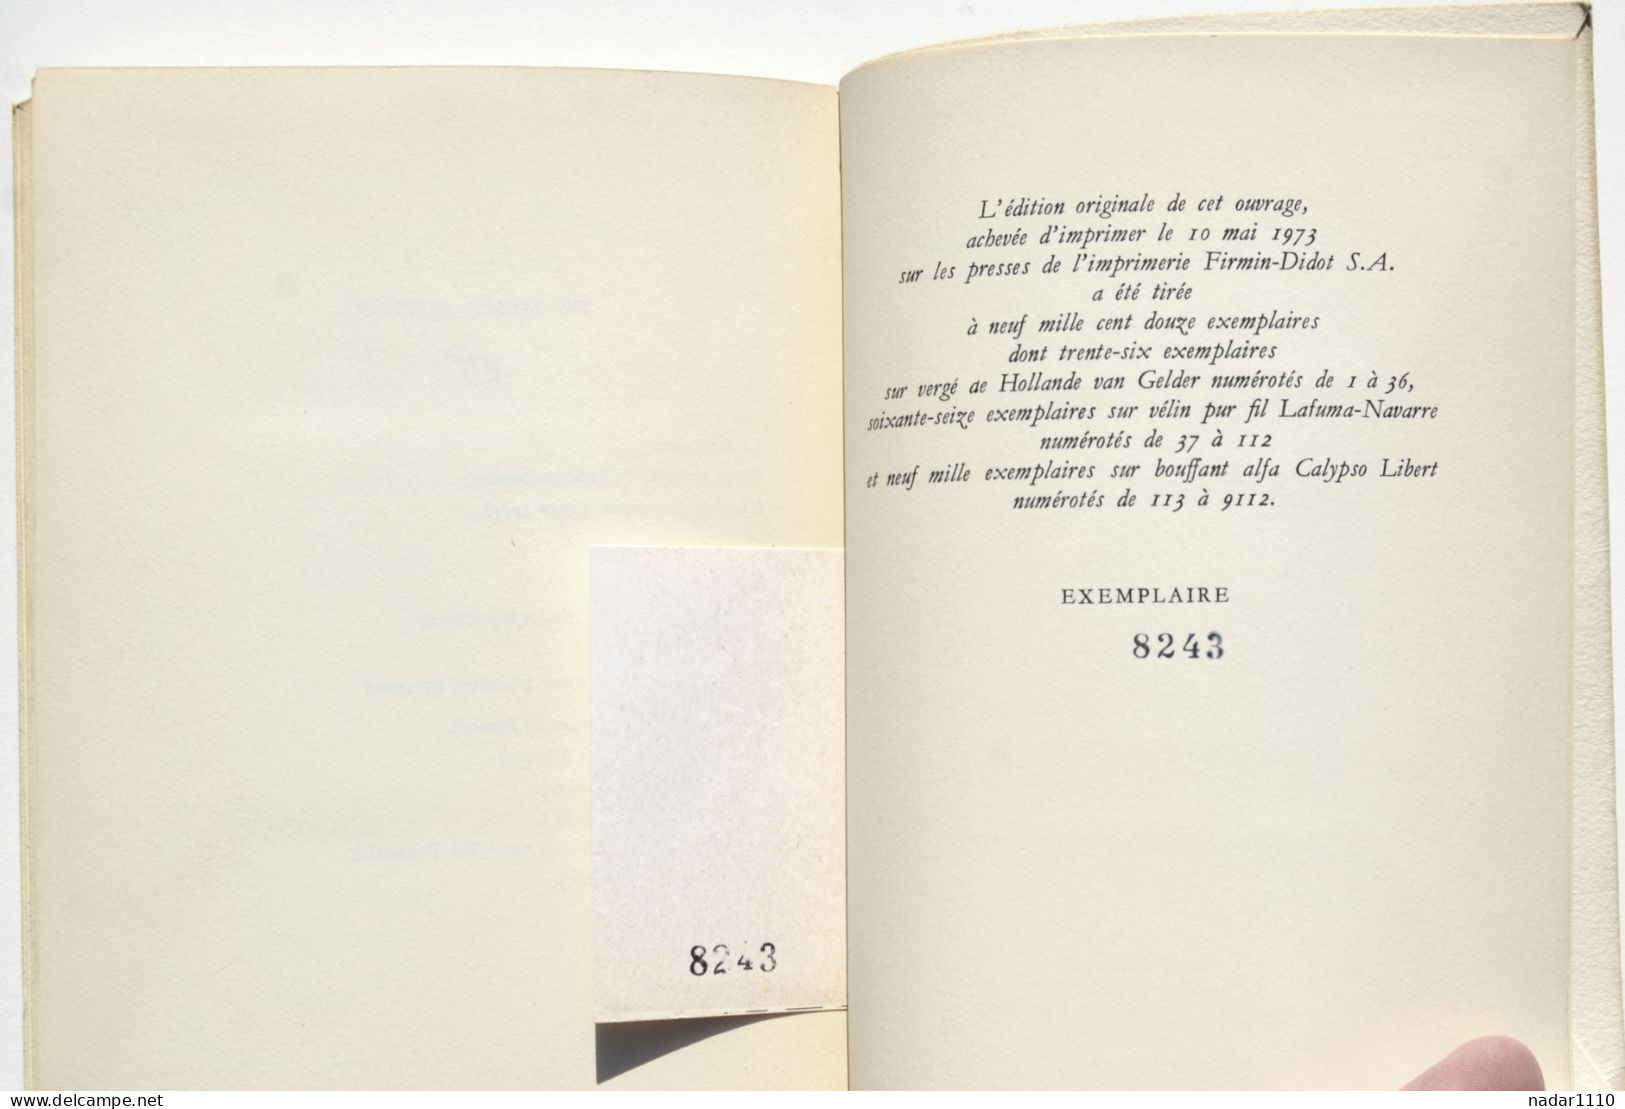 Poésie / Henri Michaux - Moments - Traversées du Temps - Gallimard EO 1973, tirage numéroté sur alfa bouffant